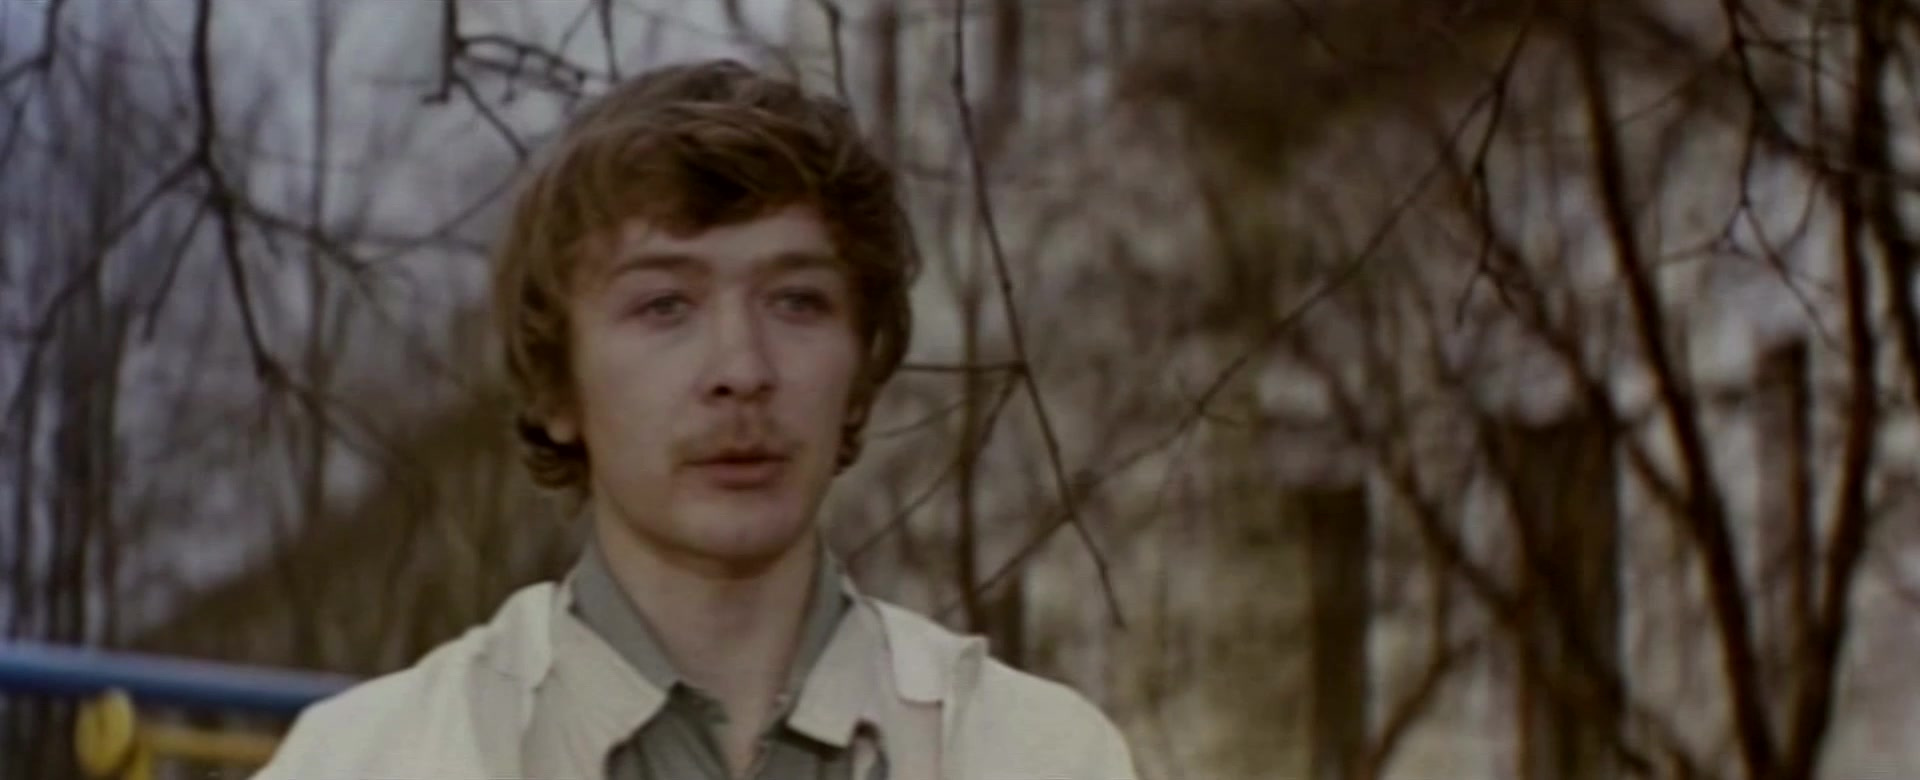 Усатый нянь фильм 1977